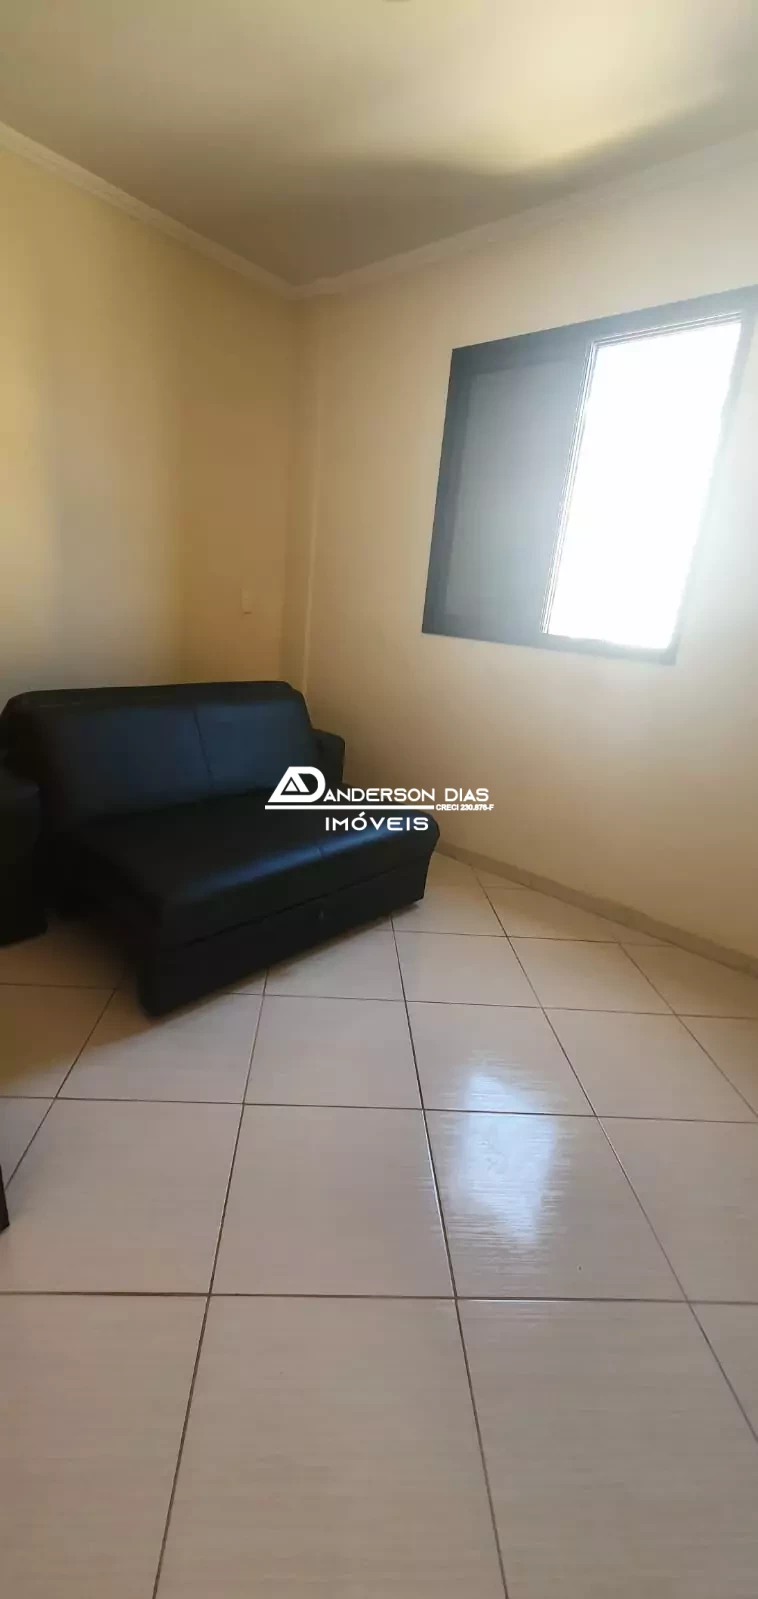 Loft com 1 dormitório, com 42m² á venda  por R$ 270mil - Massaguaçu - Caraguatatuba-SP